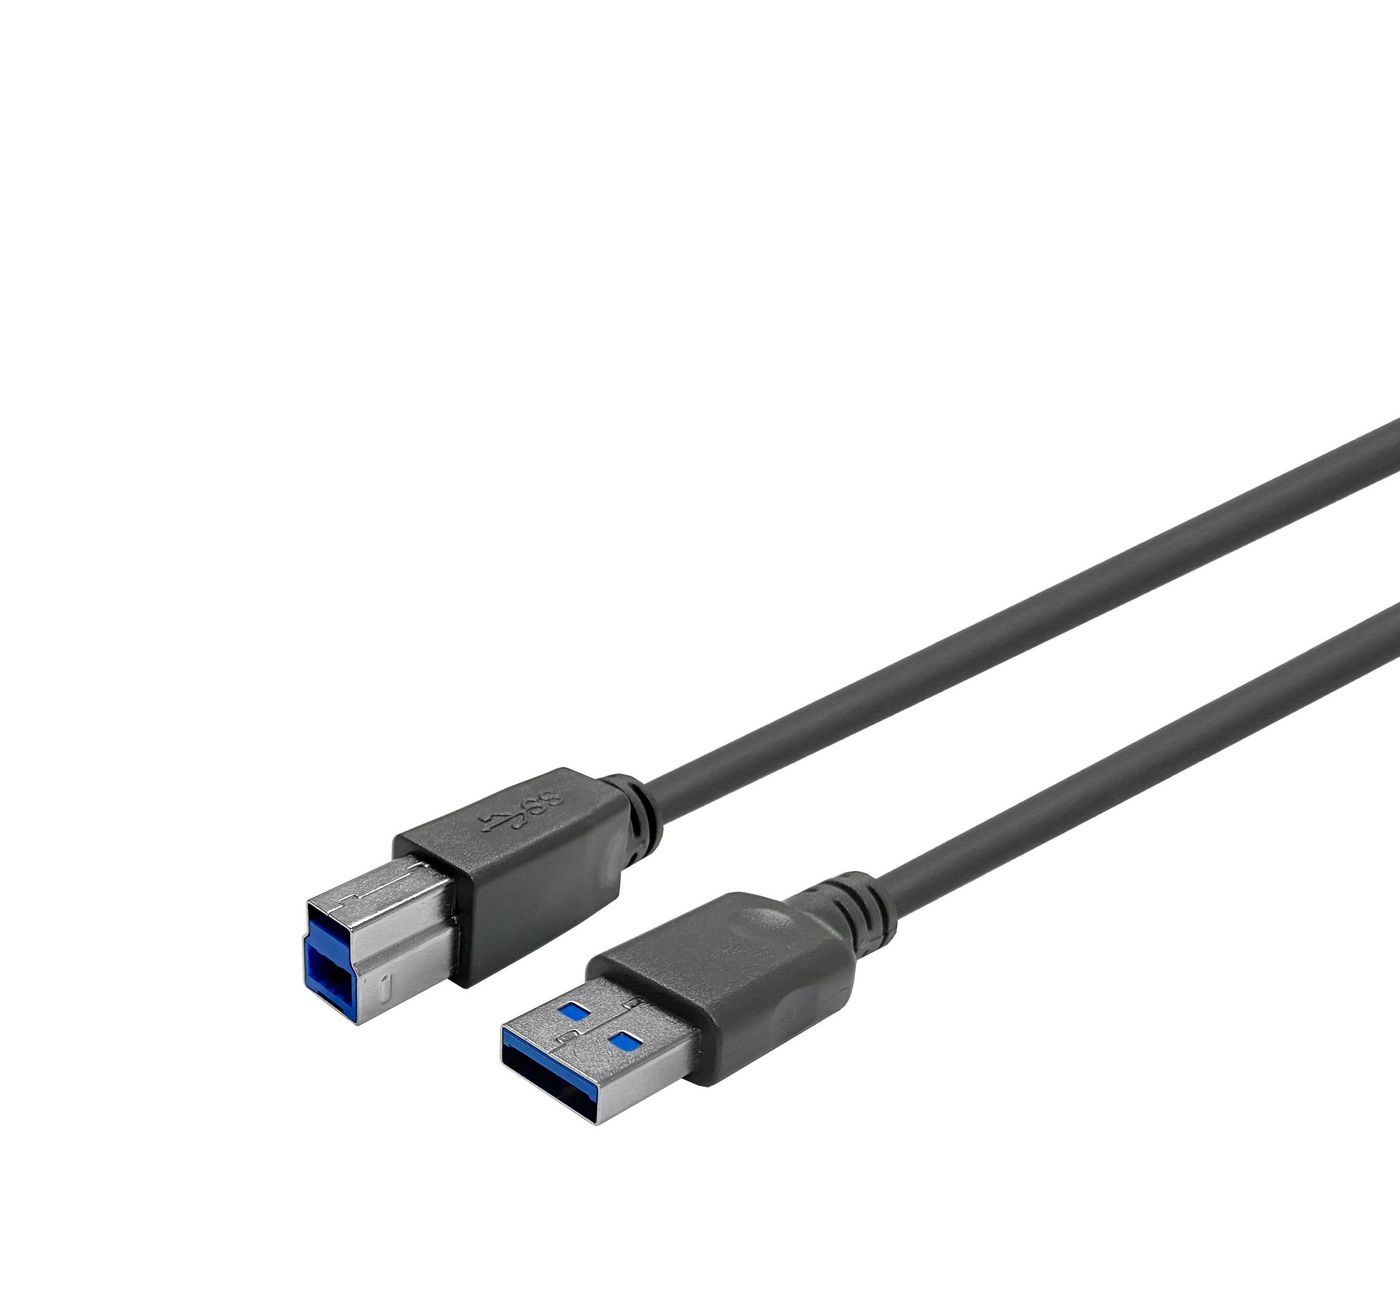 PROUSB3AB7C VIVOLINK USB 3.0 ACTIVE CABLE A MALE -